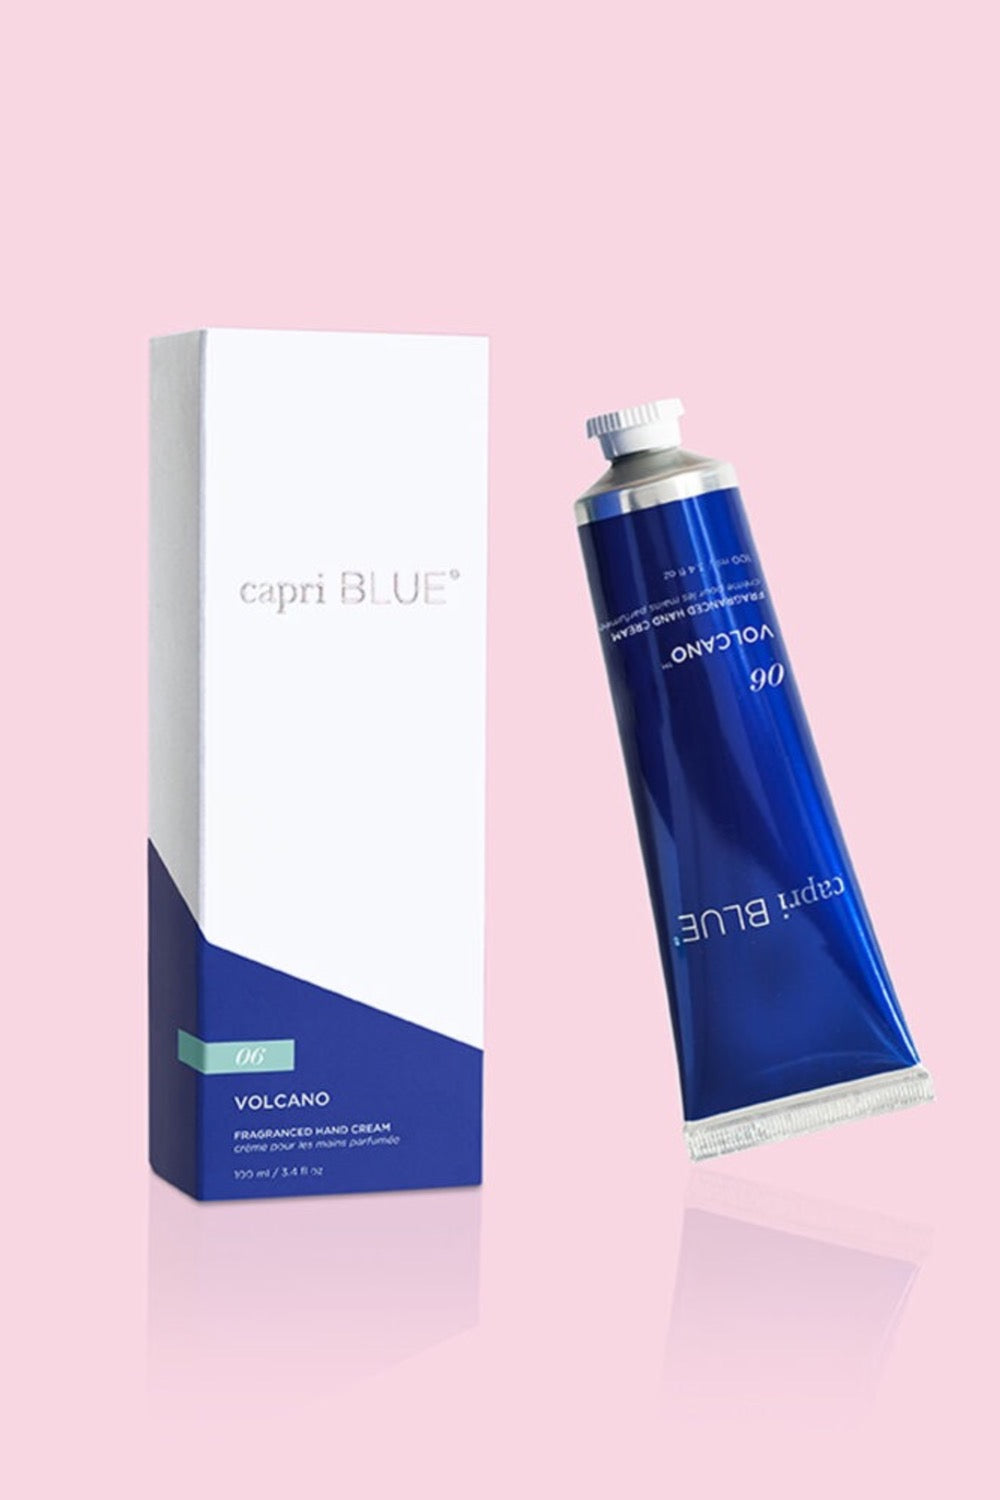 Capri Blue: Volcano Hand Cream 3.4 oz | Makk Fashions